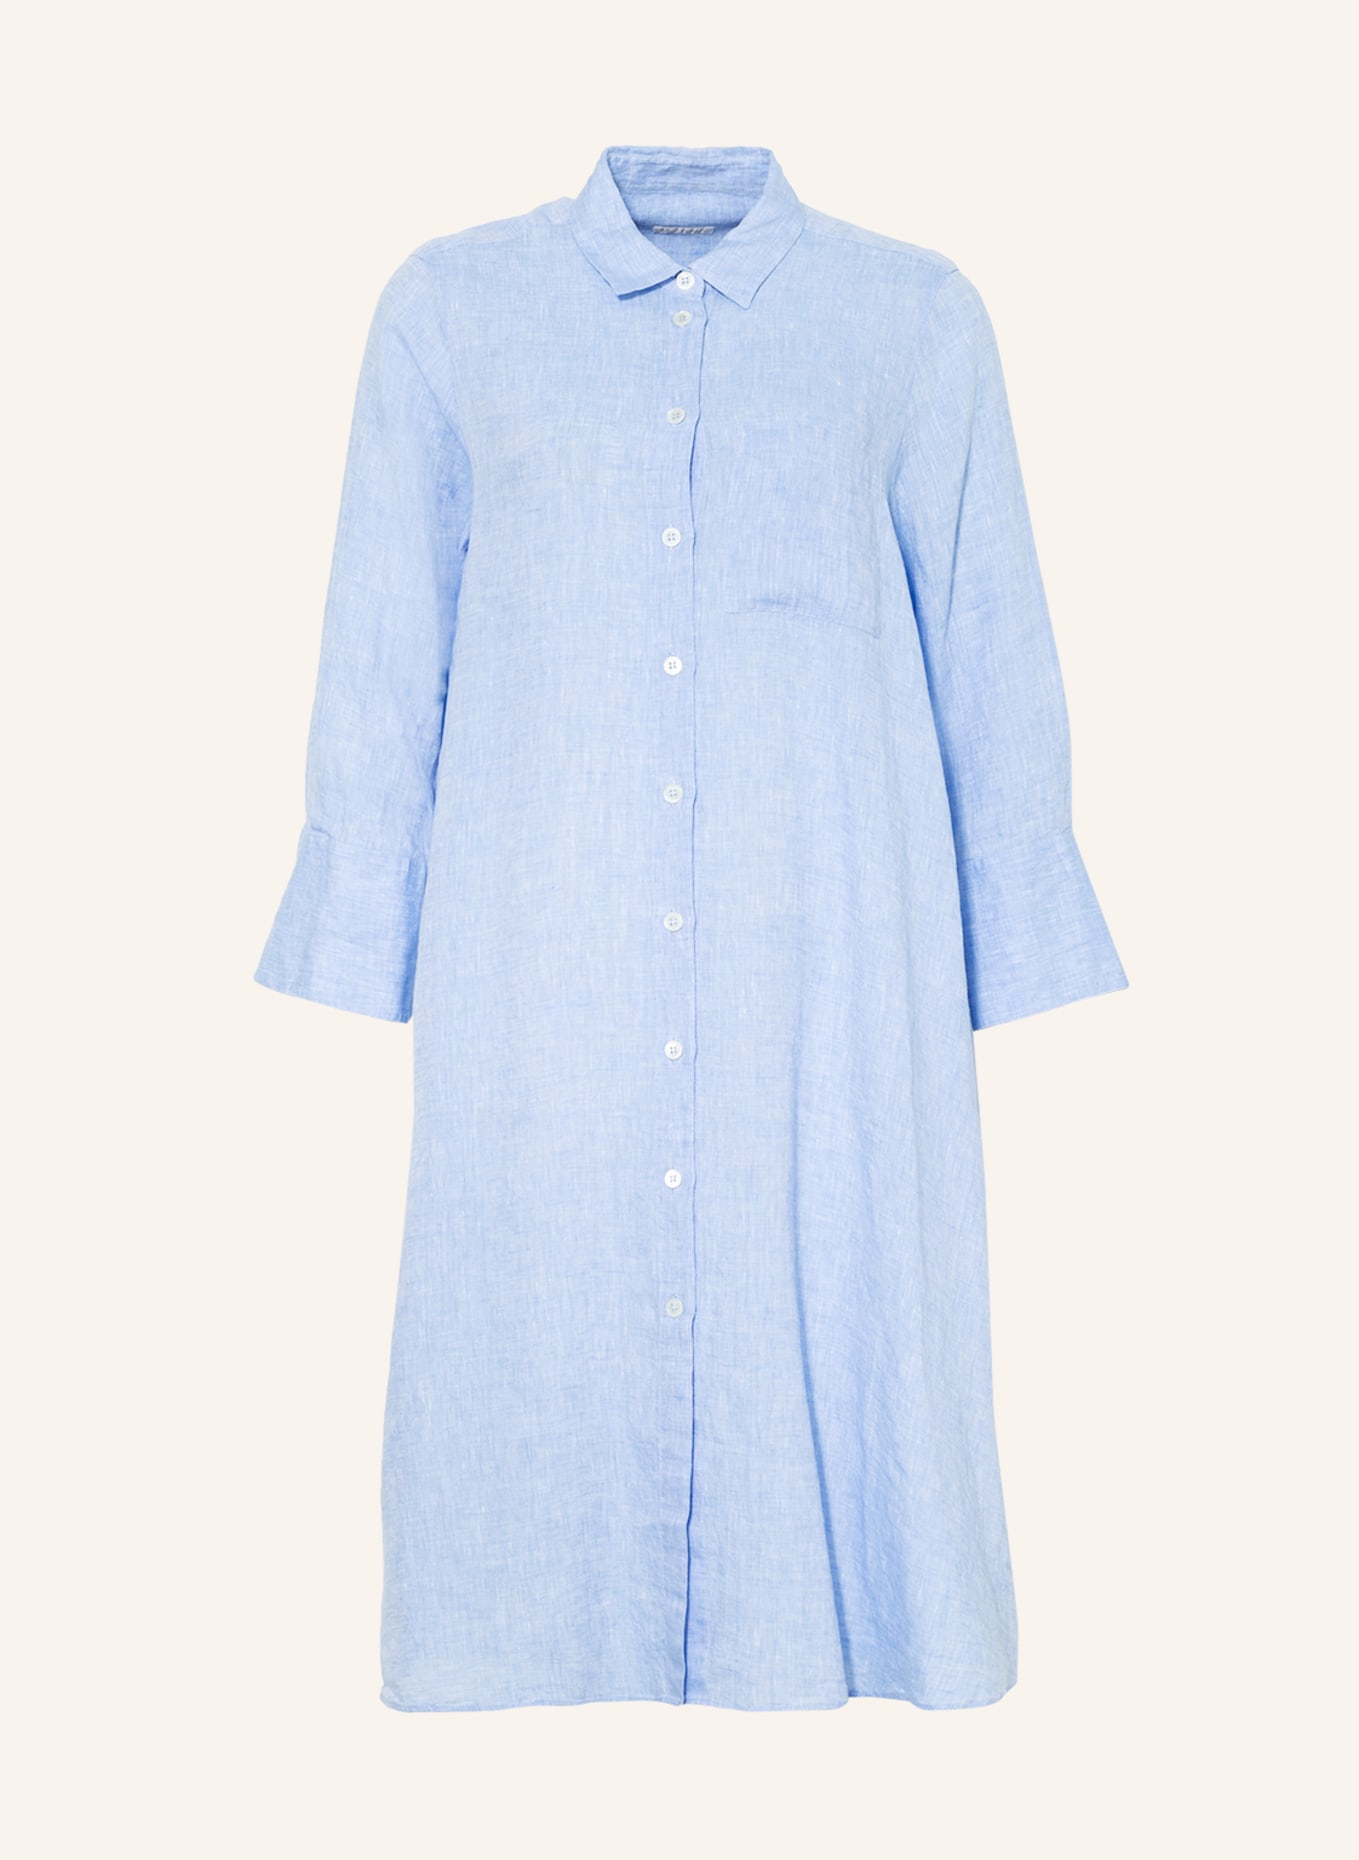 ROBERT FRIEDMAN Shirt dress LENA made of linen, Color: LIGHT BLUE (Image 1)